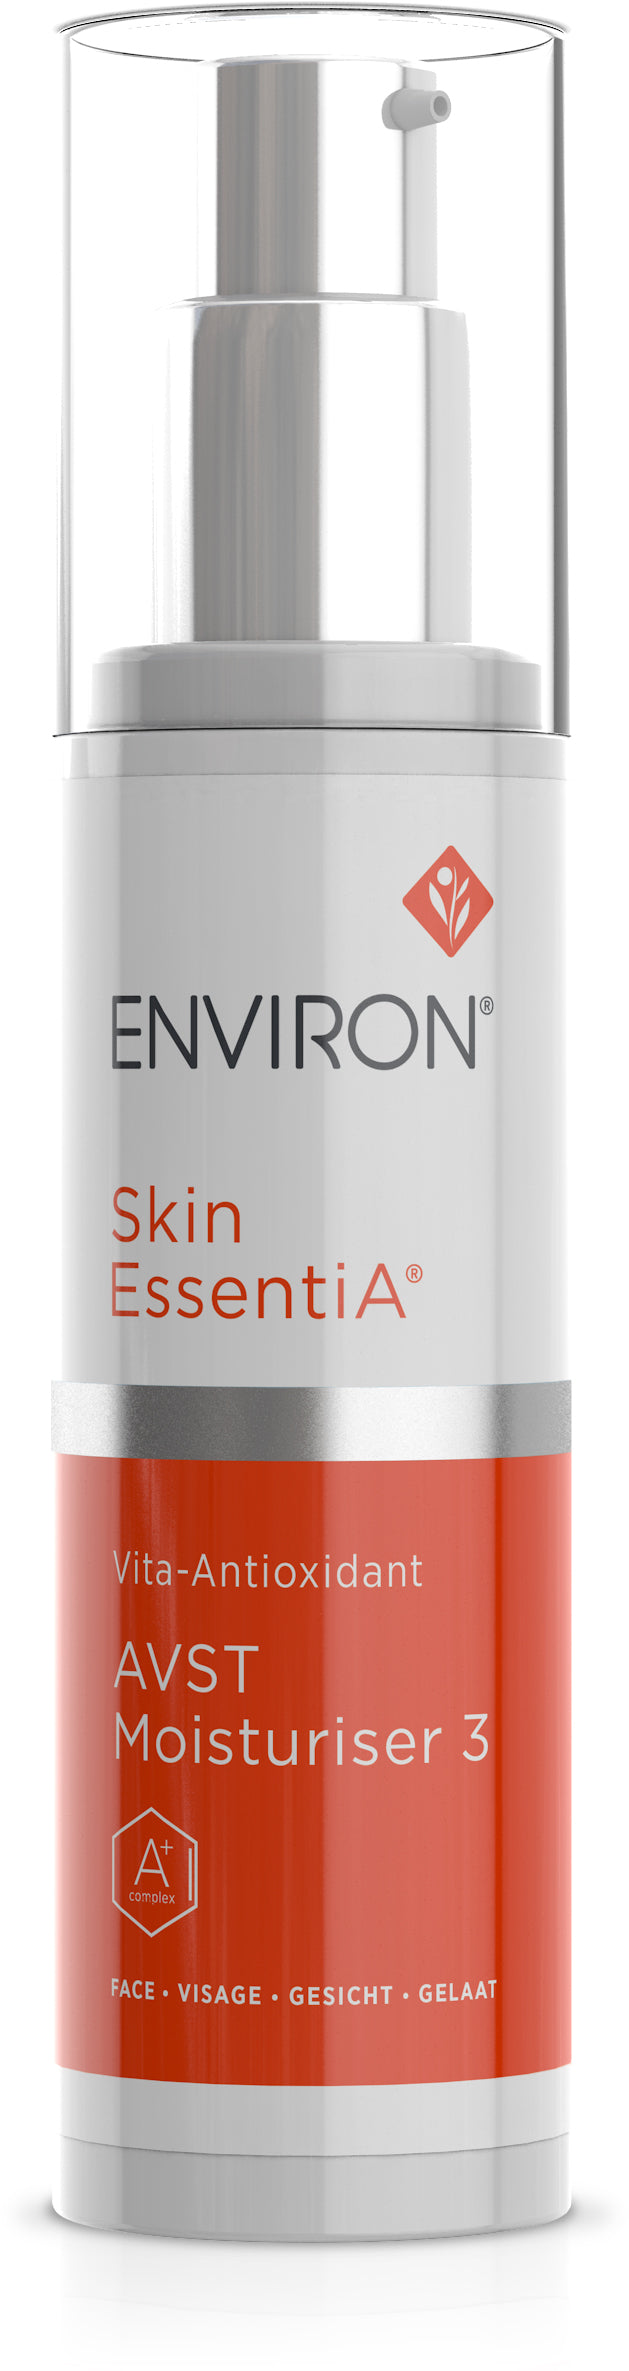 Skin EssentiA | Vita-Antioxidant | AVST Moisturiser 3